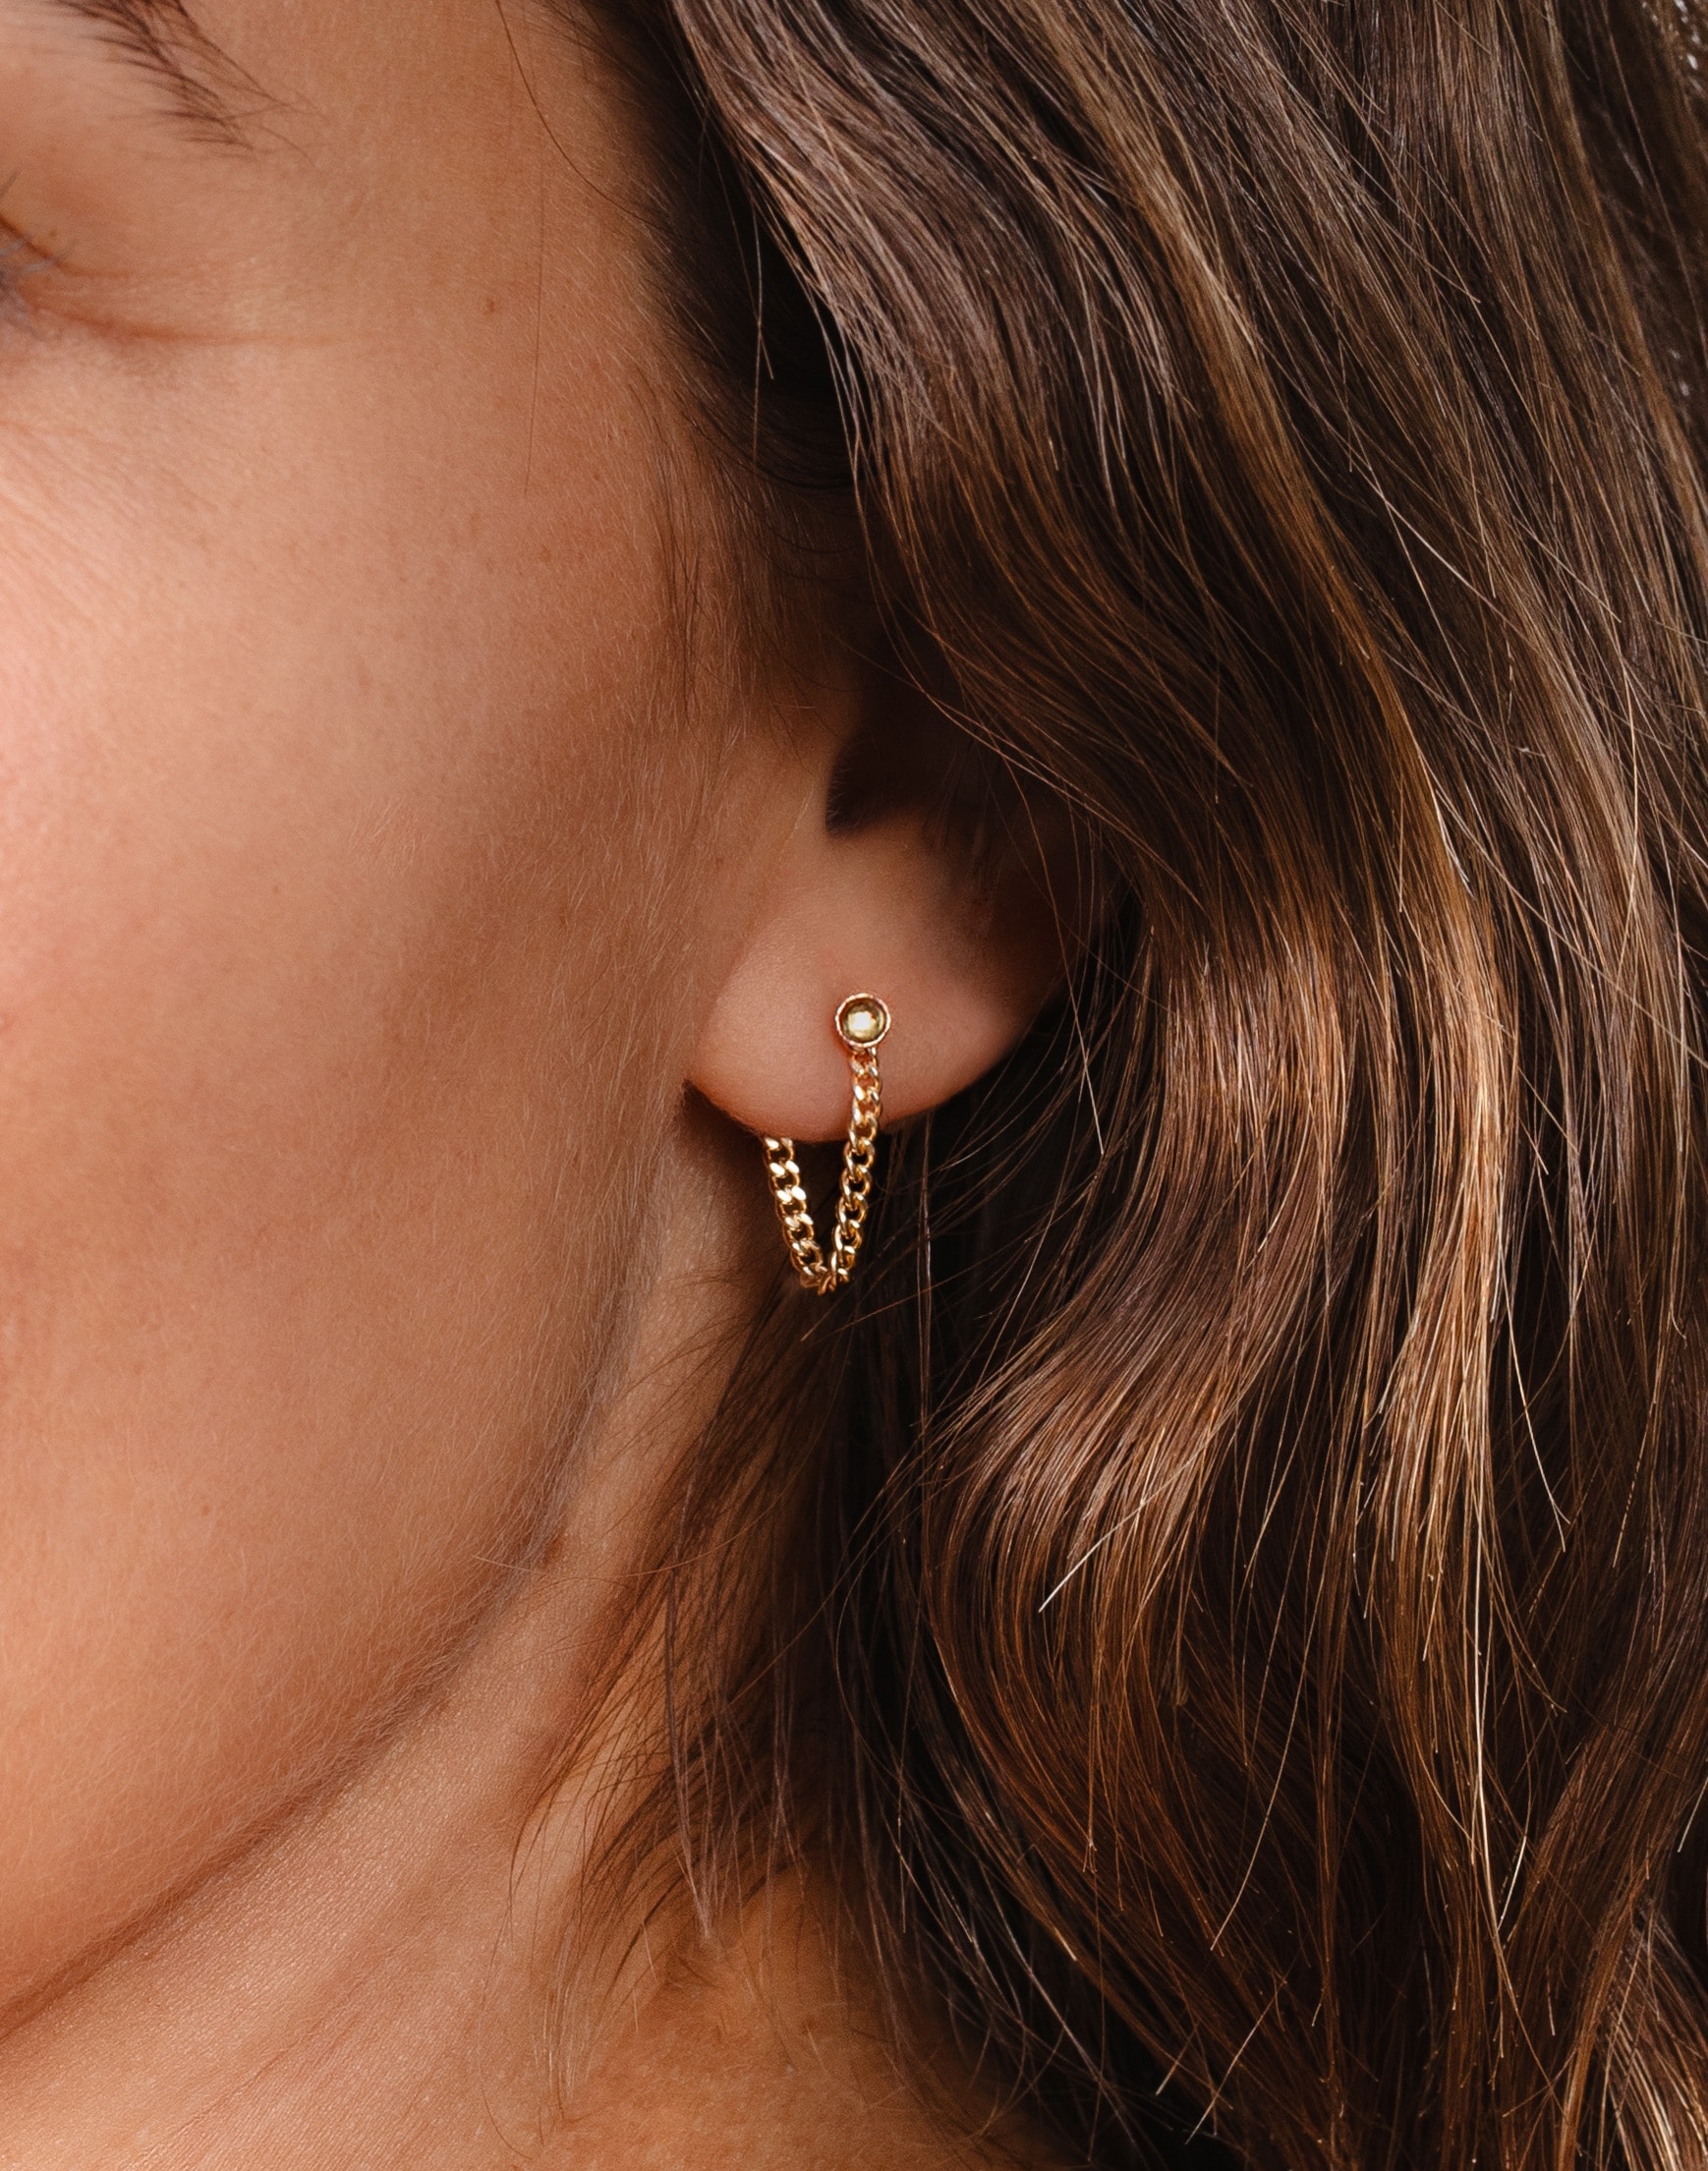 In Situ Jewelry 14k Gold-Filled Enver Stud Earrings